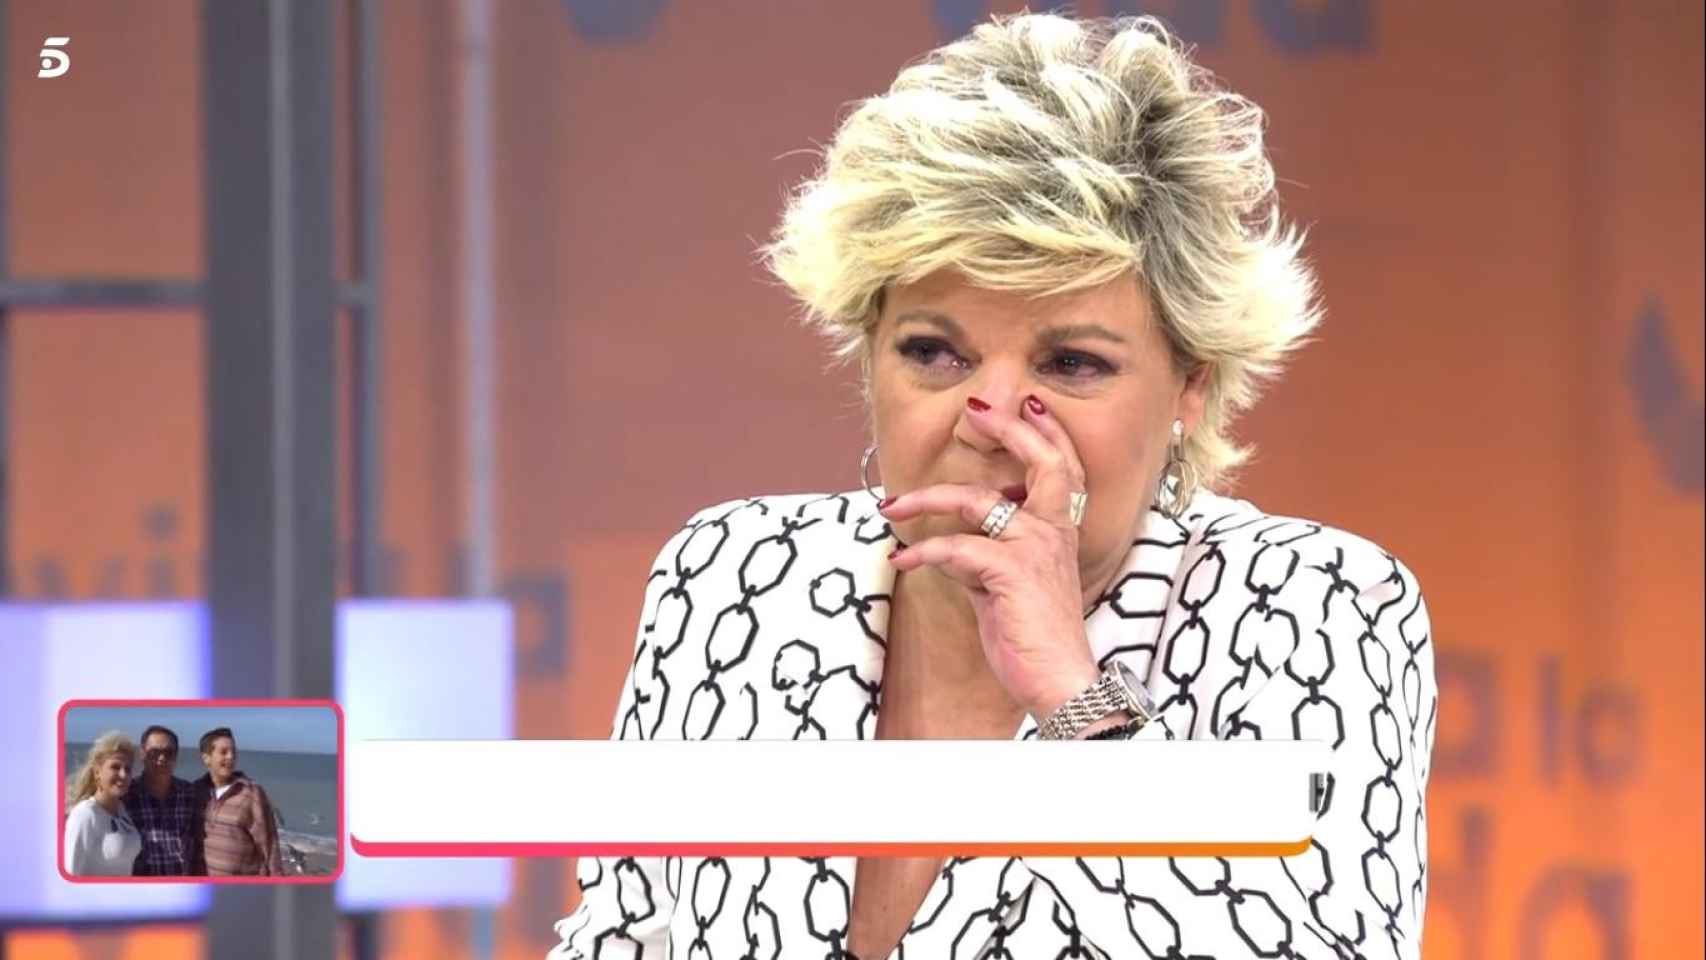 Terelu Campos, emocionada, rompe a llorar en directo / MEDIASET